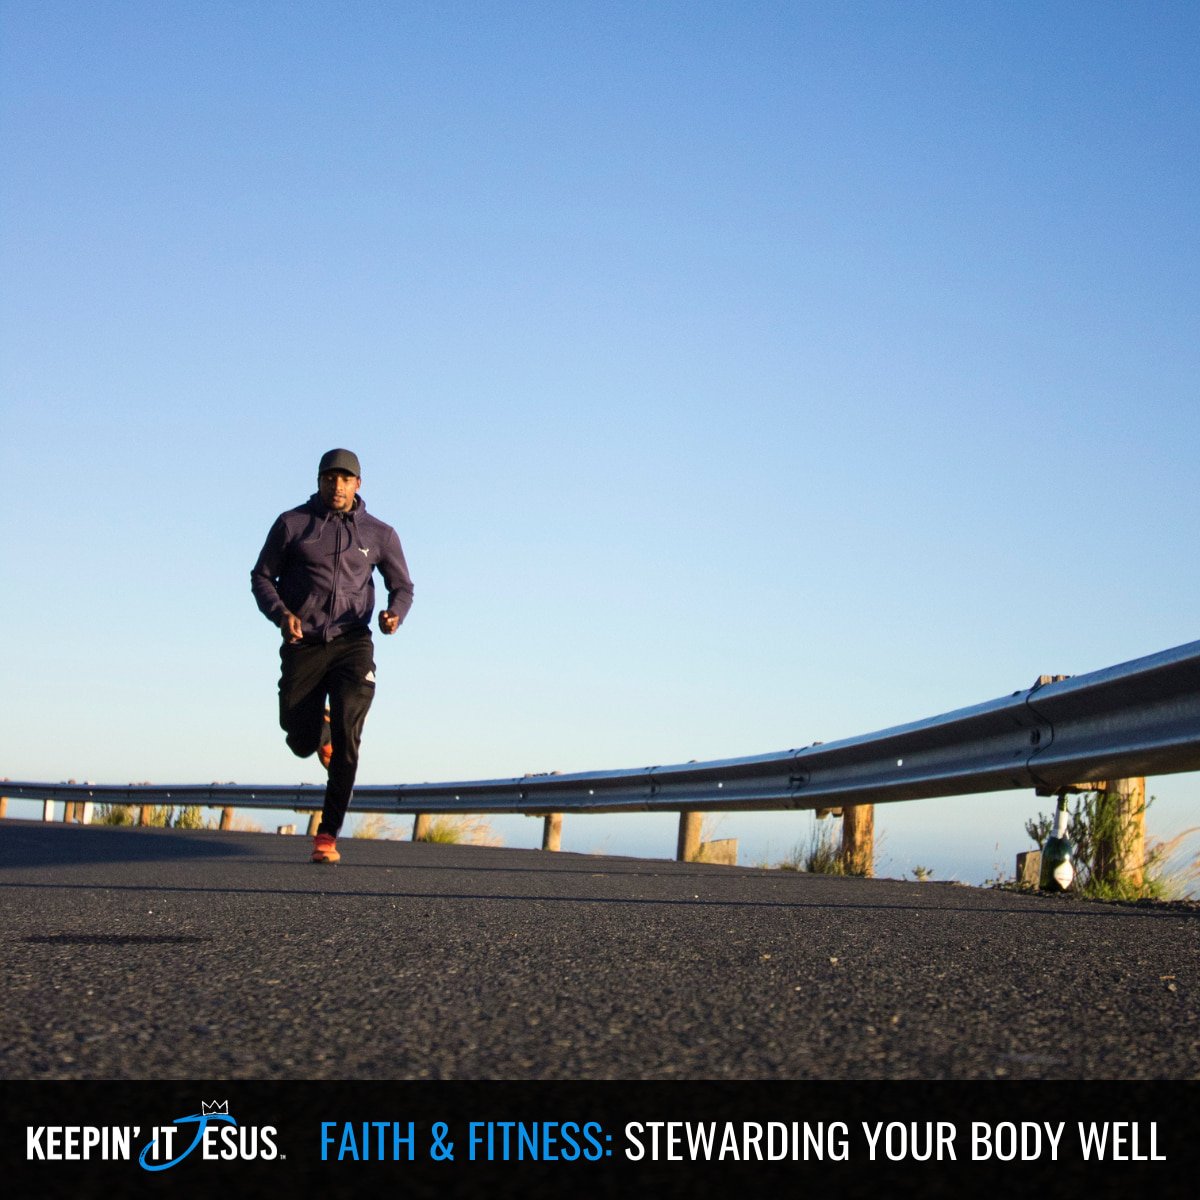 Faith & Fitness: Stewarding Your Body Well